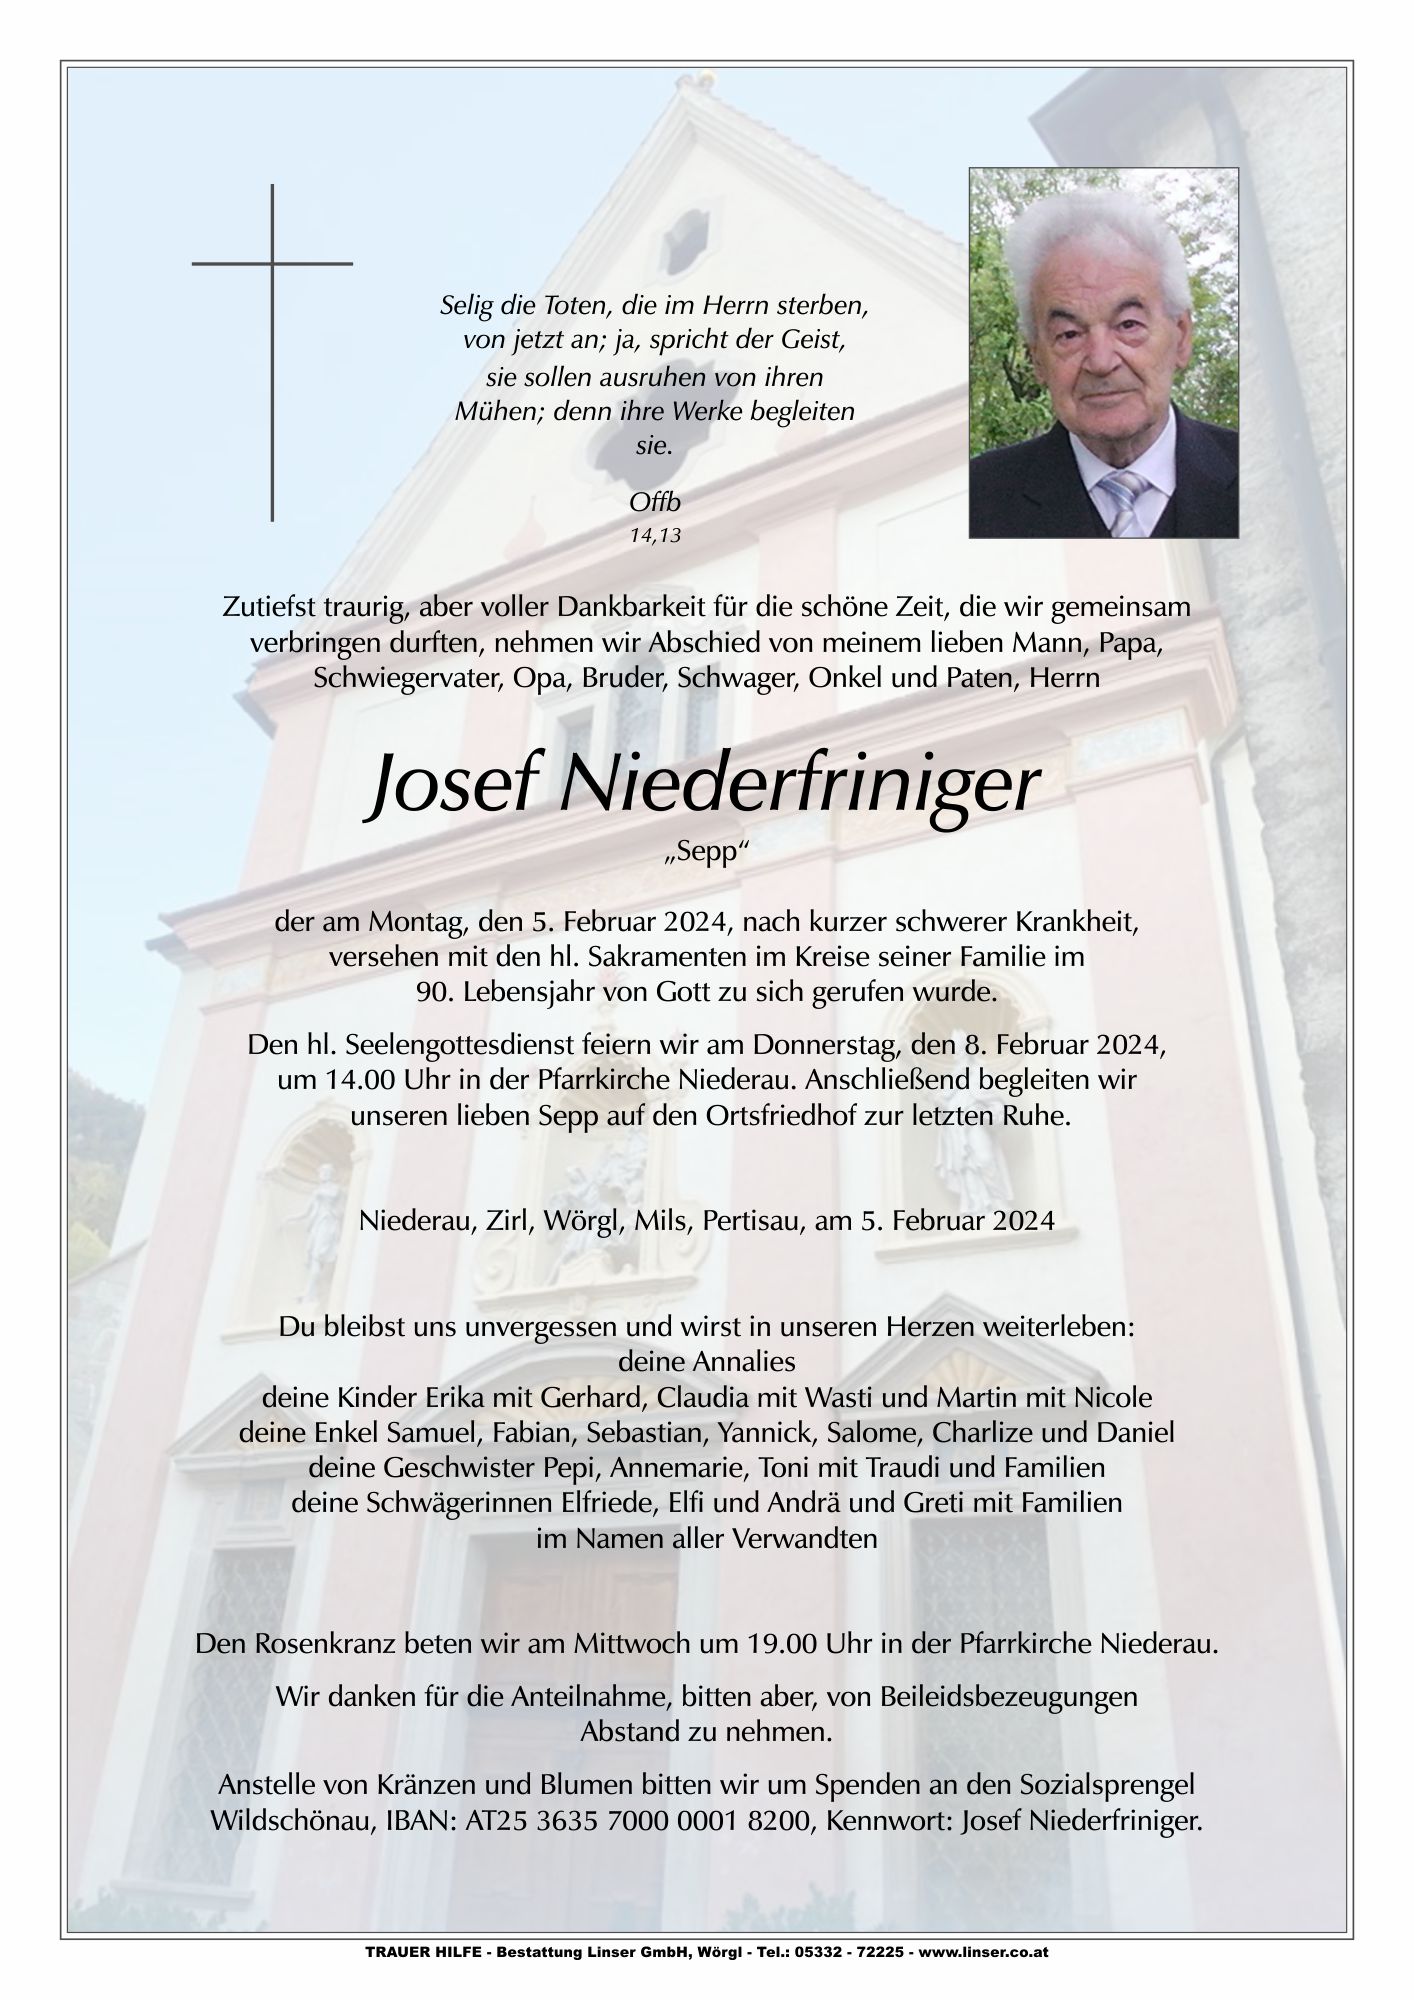 Josef Niederfriniger